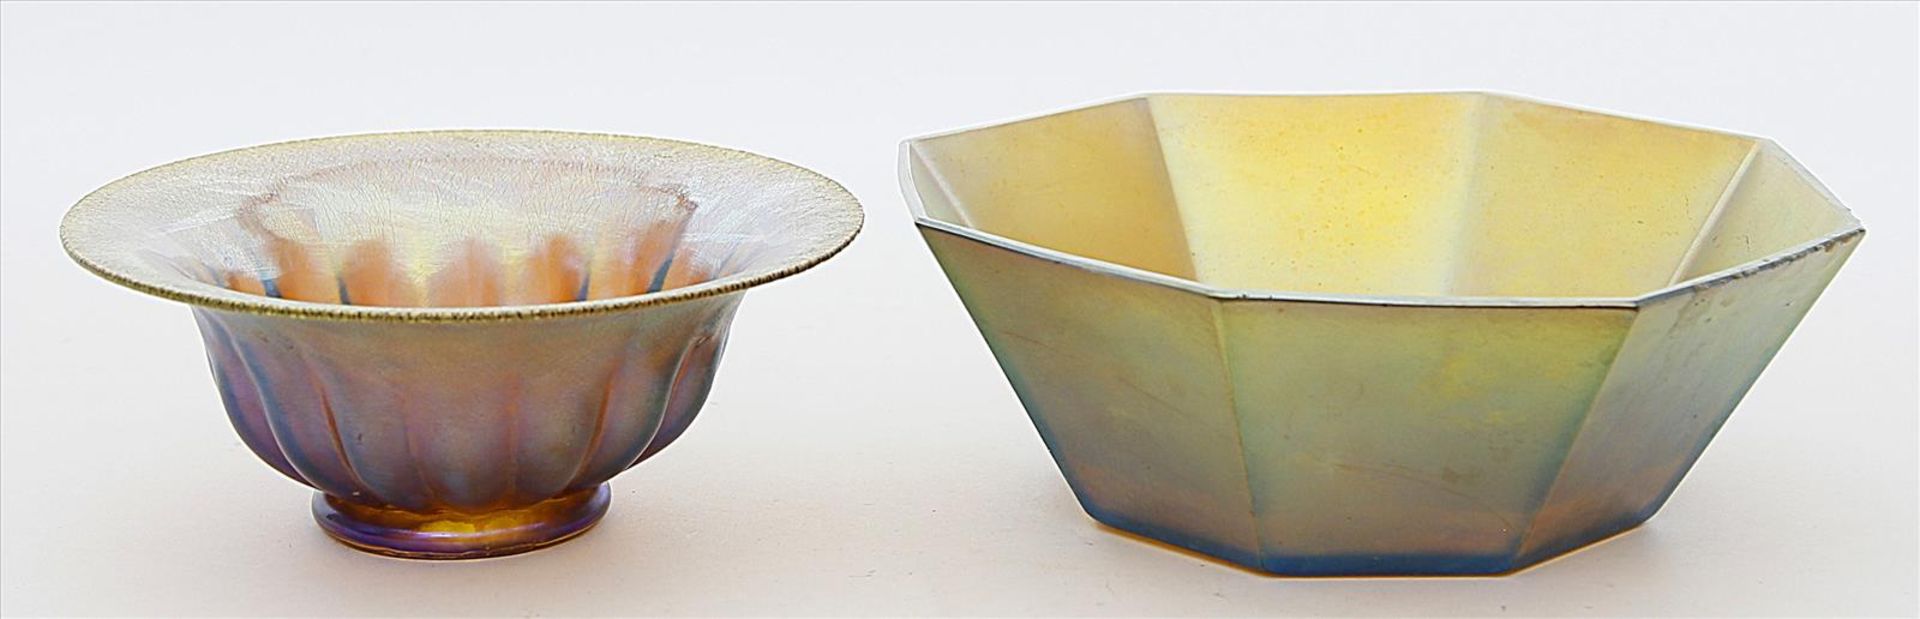 Zwei Schalen.Bernsteinfarbenes Glas, golden bis violett irisierend, so genanntes "Myra-Kristall".